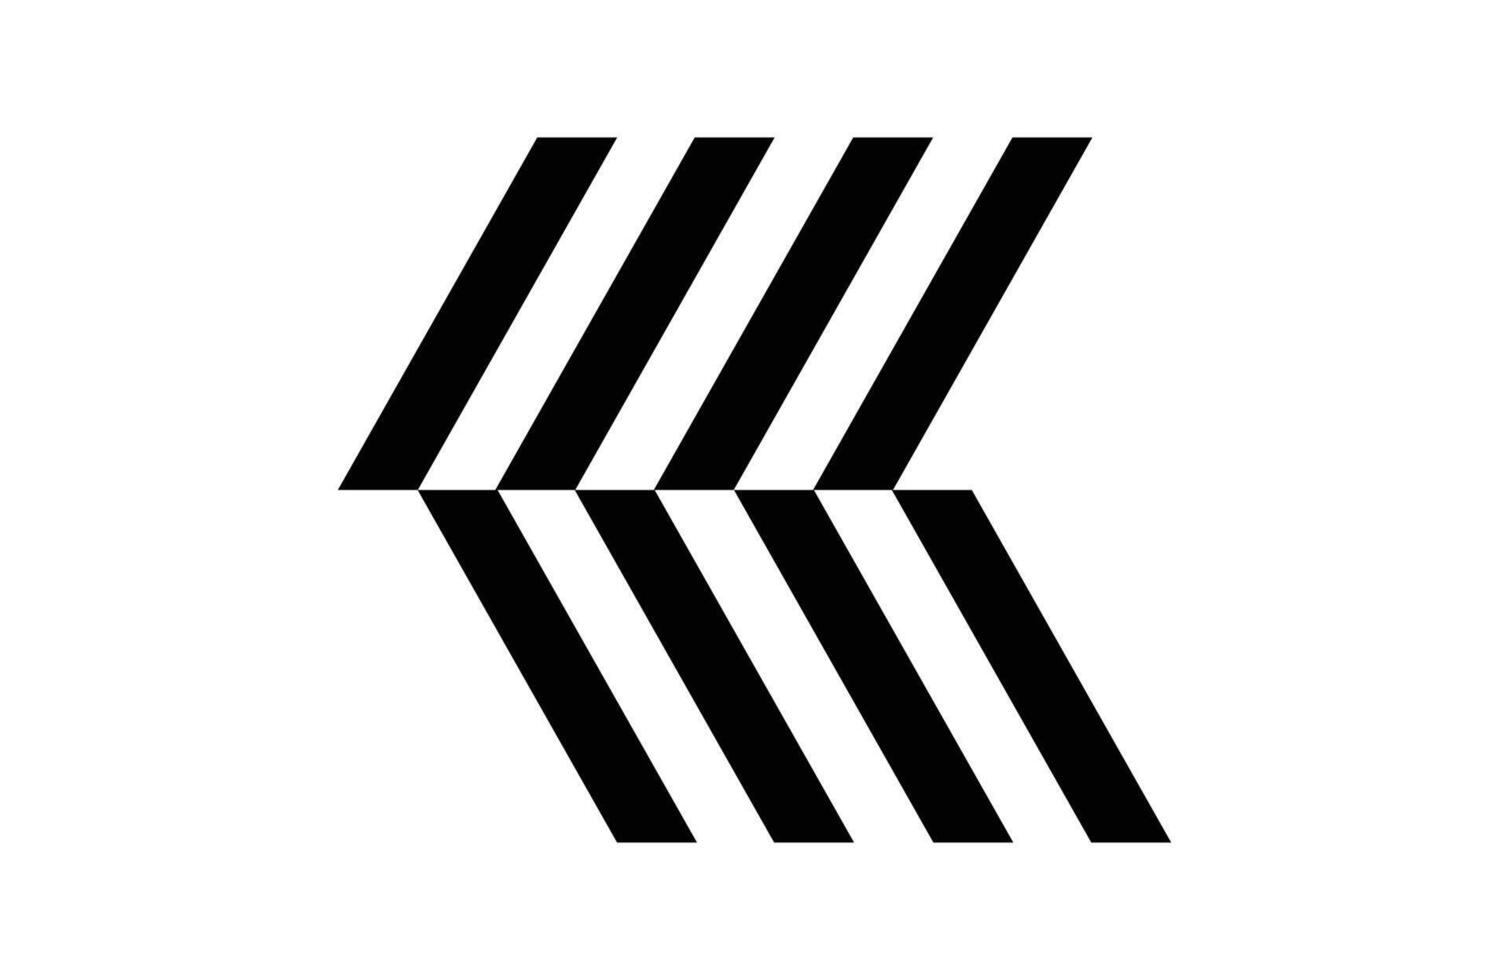 Smart arrow icon, direction vector